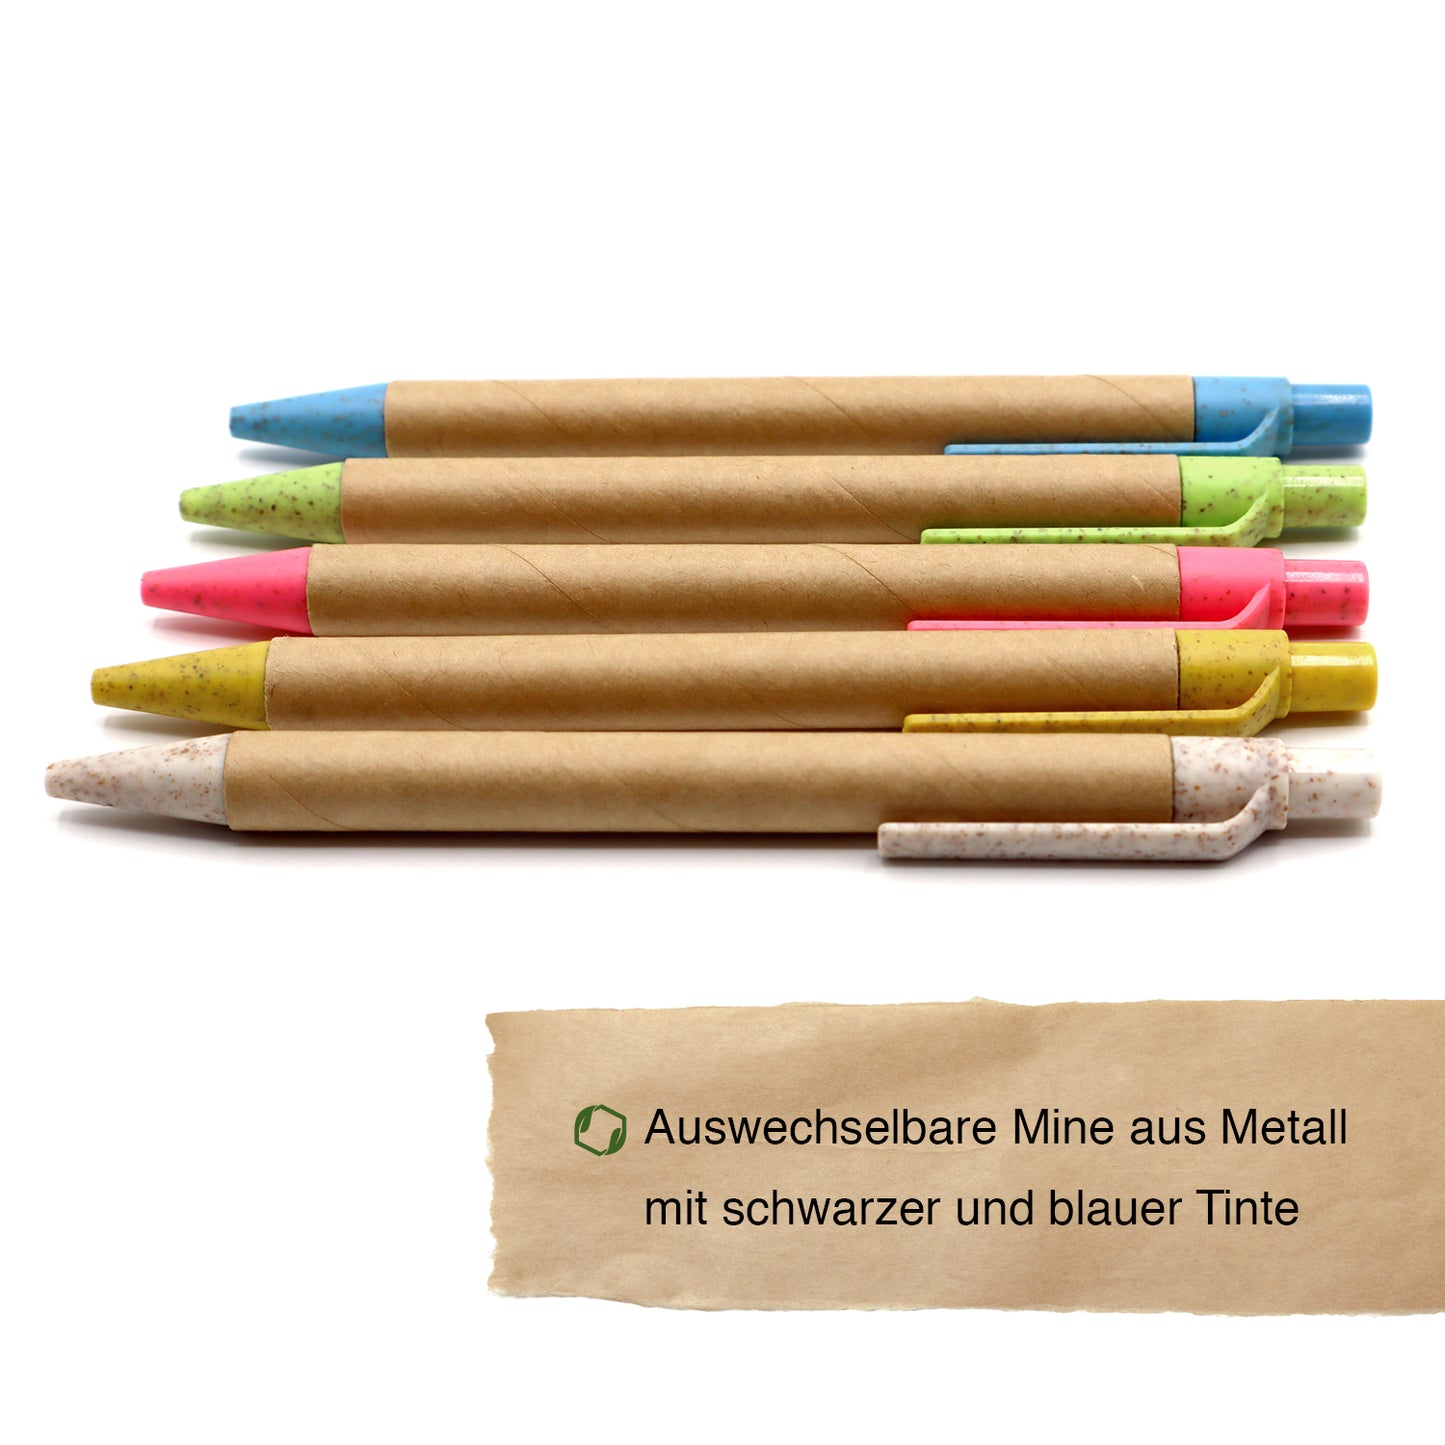 MORWE nachhaltige Kugelschreiber aus Pappe und Weizenstroh – Set aus 5 ökologischen Stiften